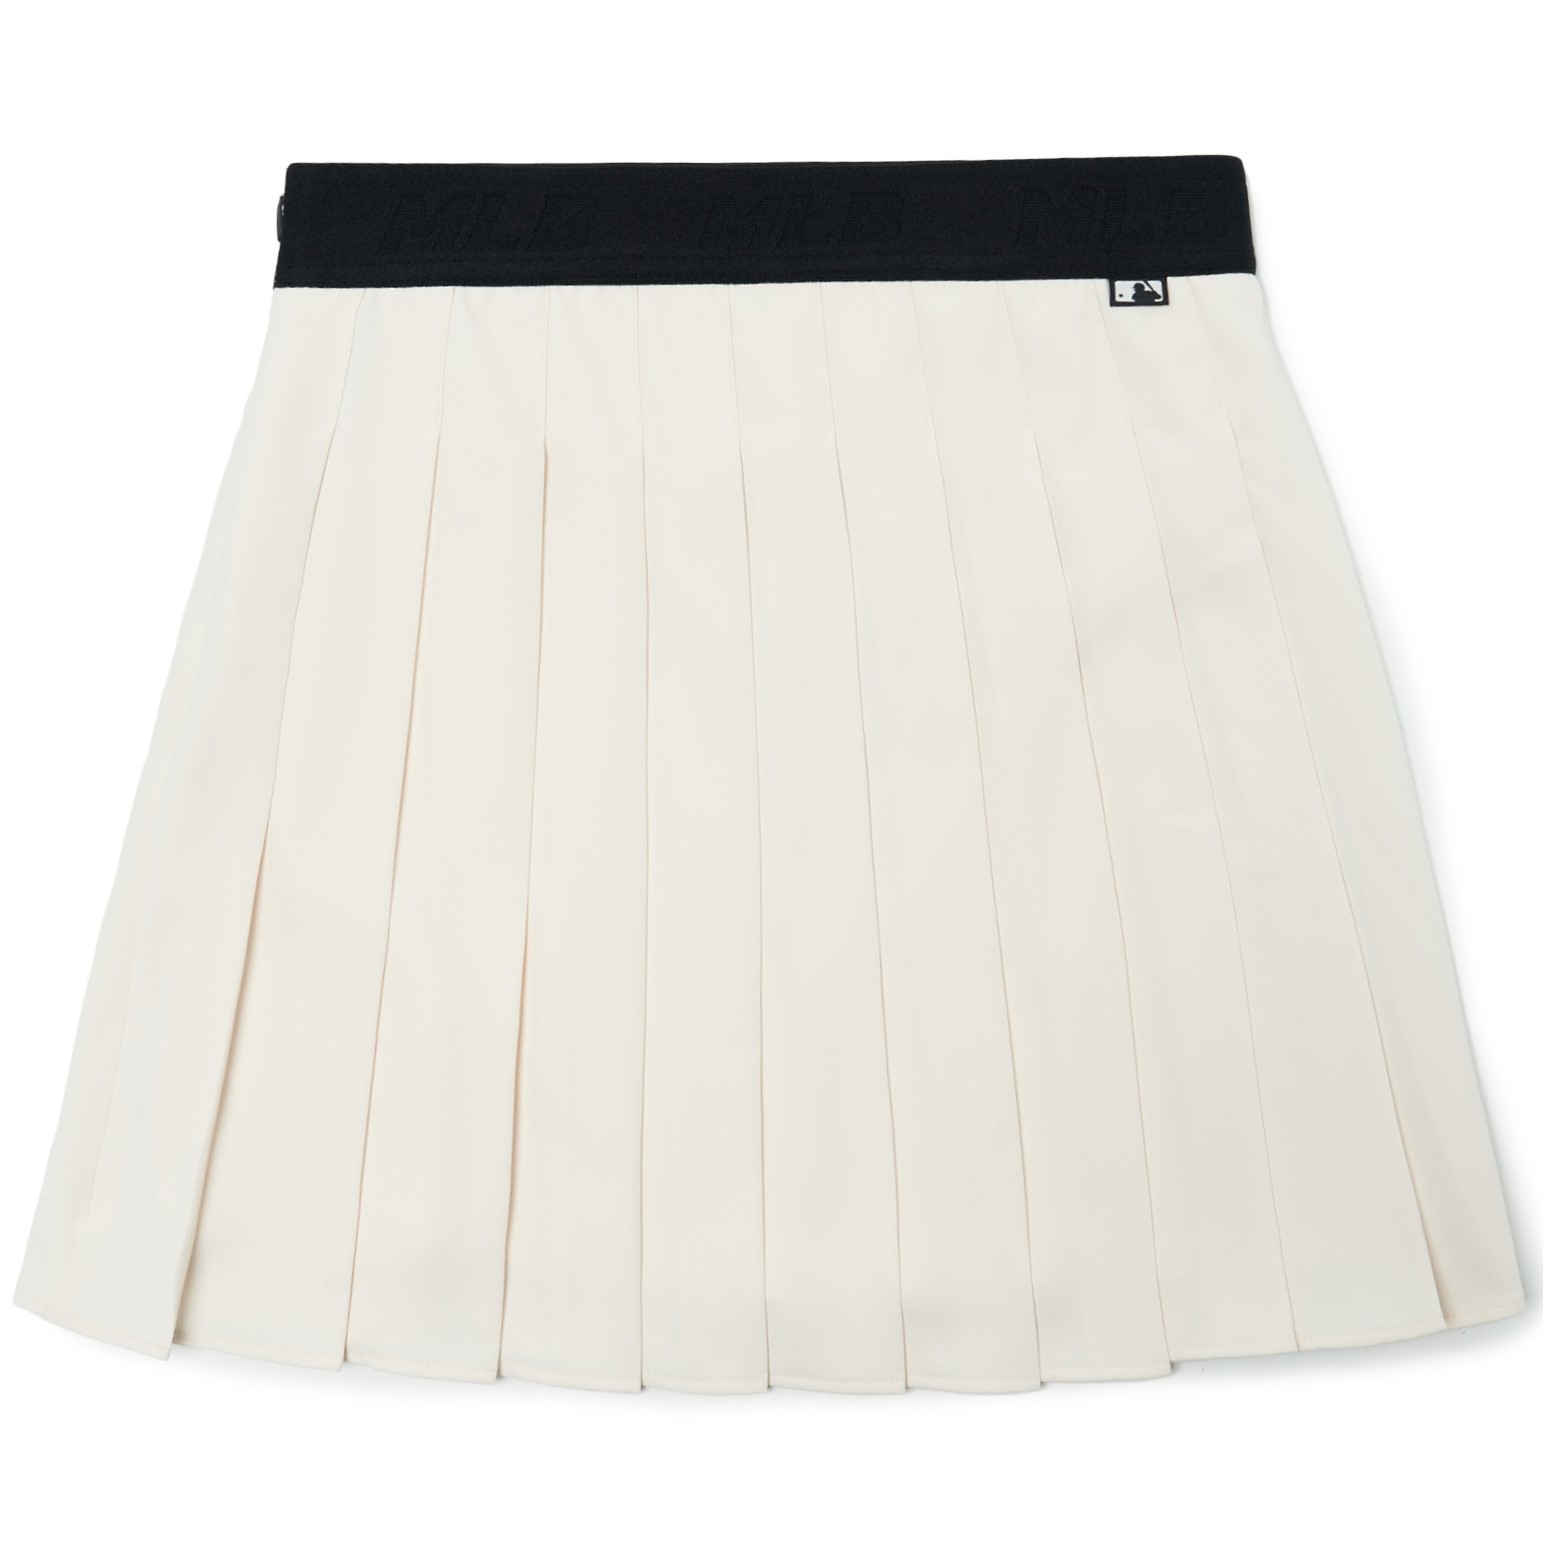 Chân váy tennis xếp li màu trắng đen lưng cao ngắn bigsize xếp ly skirt cạp  lưng cao ngắn chữ a phong cách ulzzang  MixASale